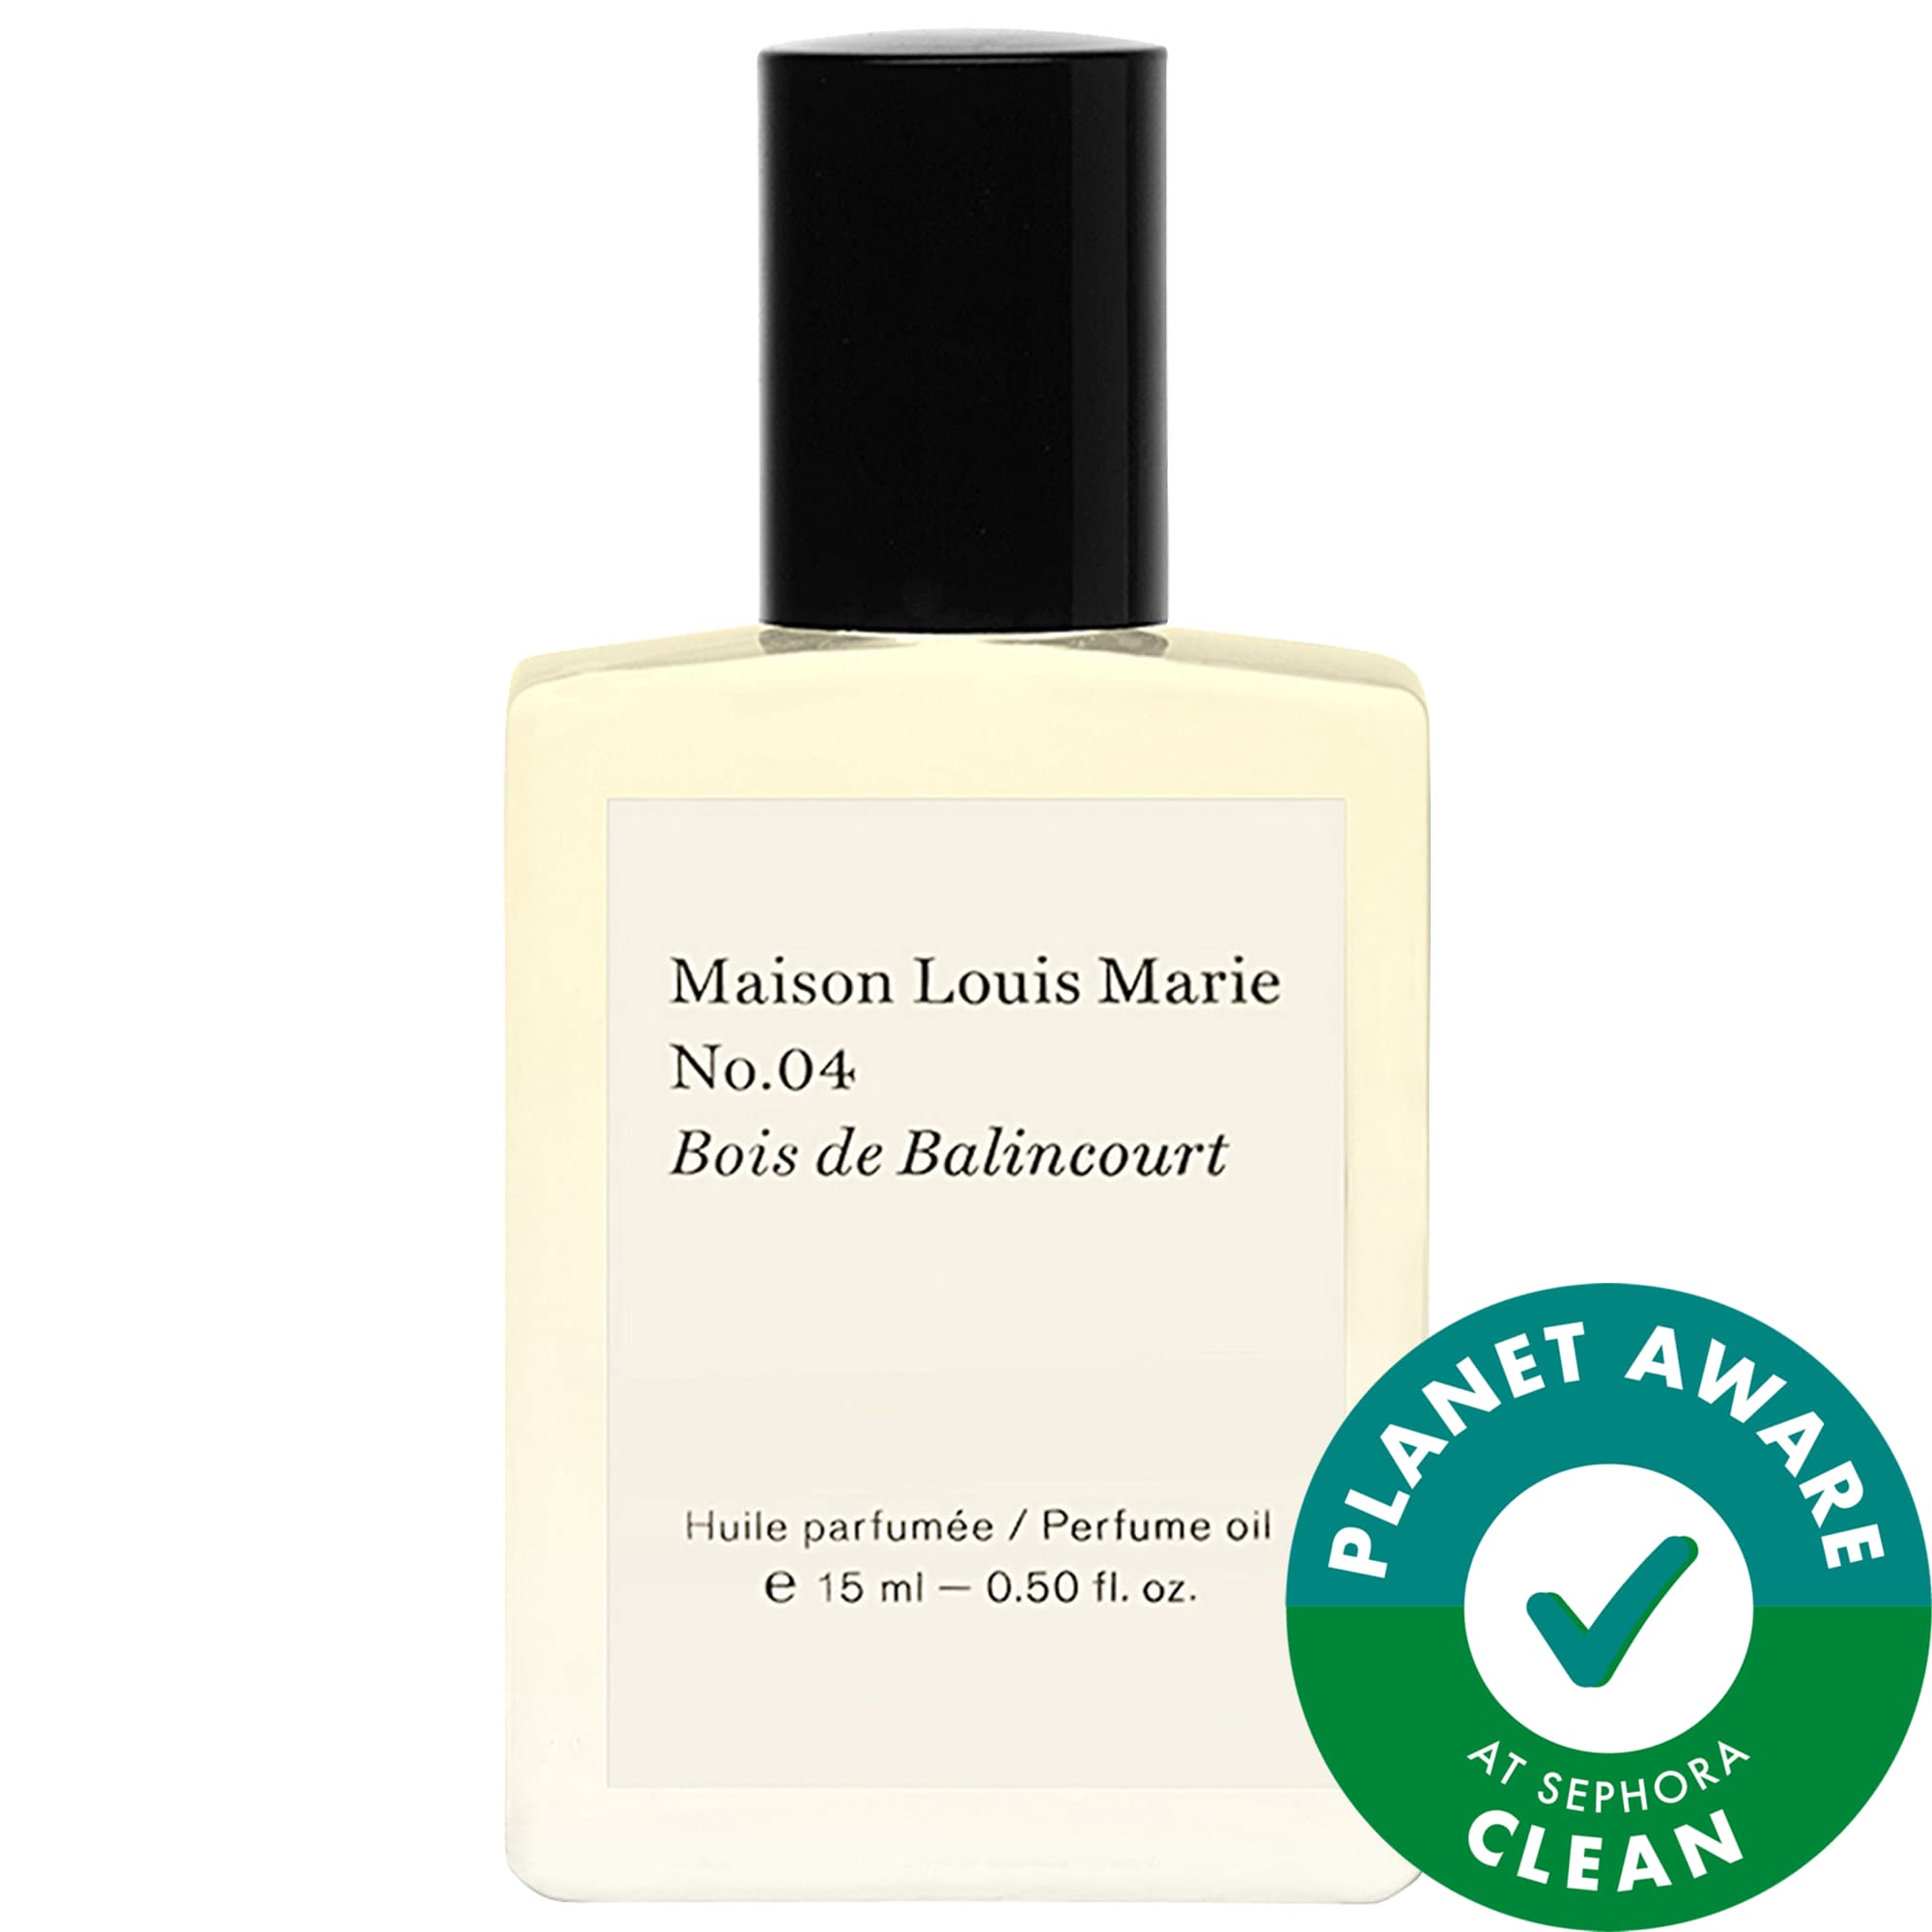 No.04 Bois de Balincourt Perfume Oil Maison Louis Marie